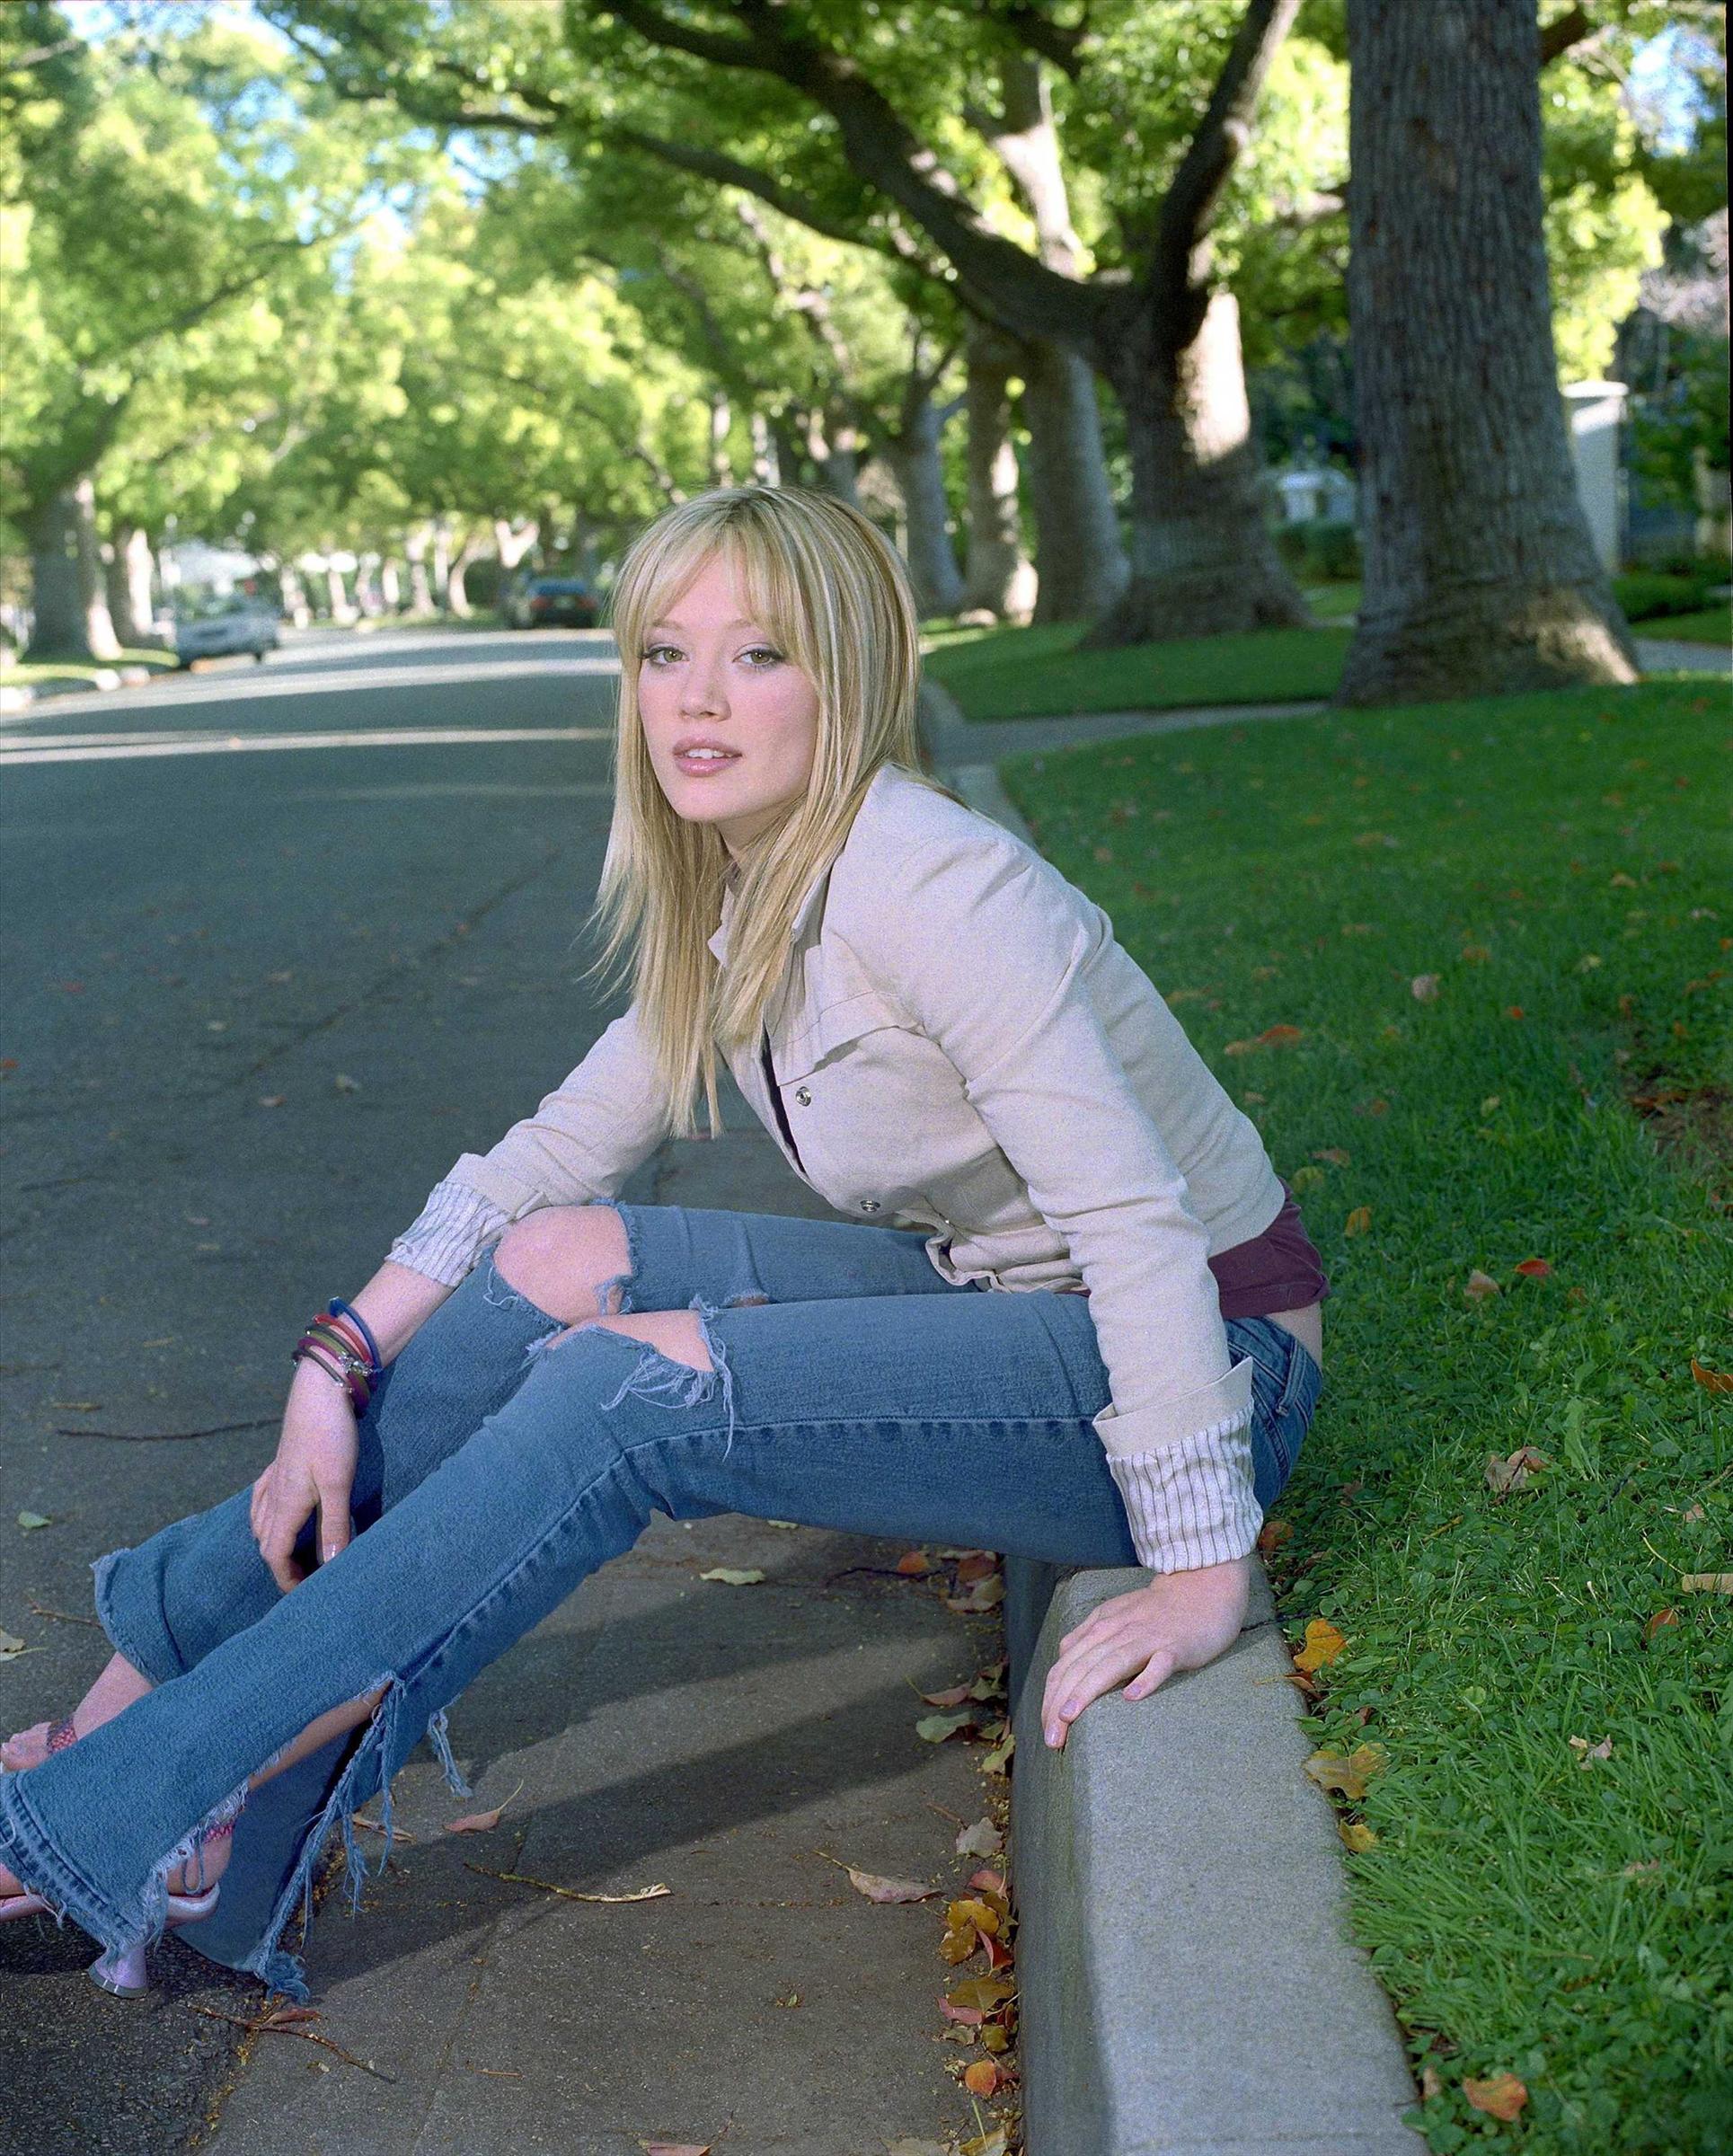 jeans, trees, grass, Hilary Duff - desktop wallpaper